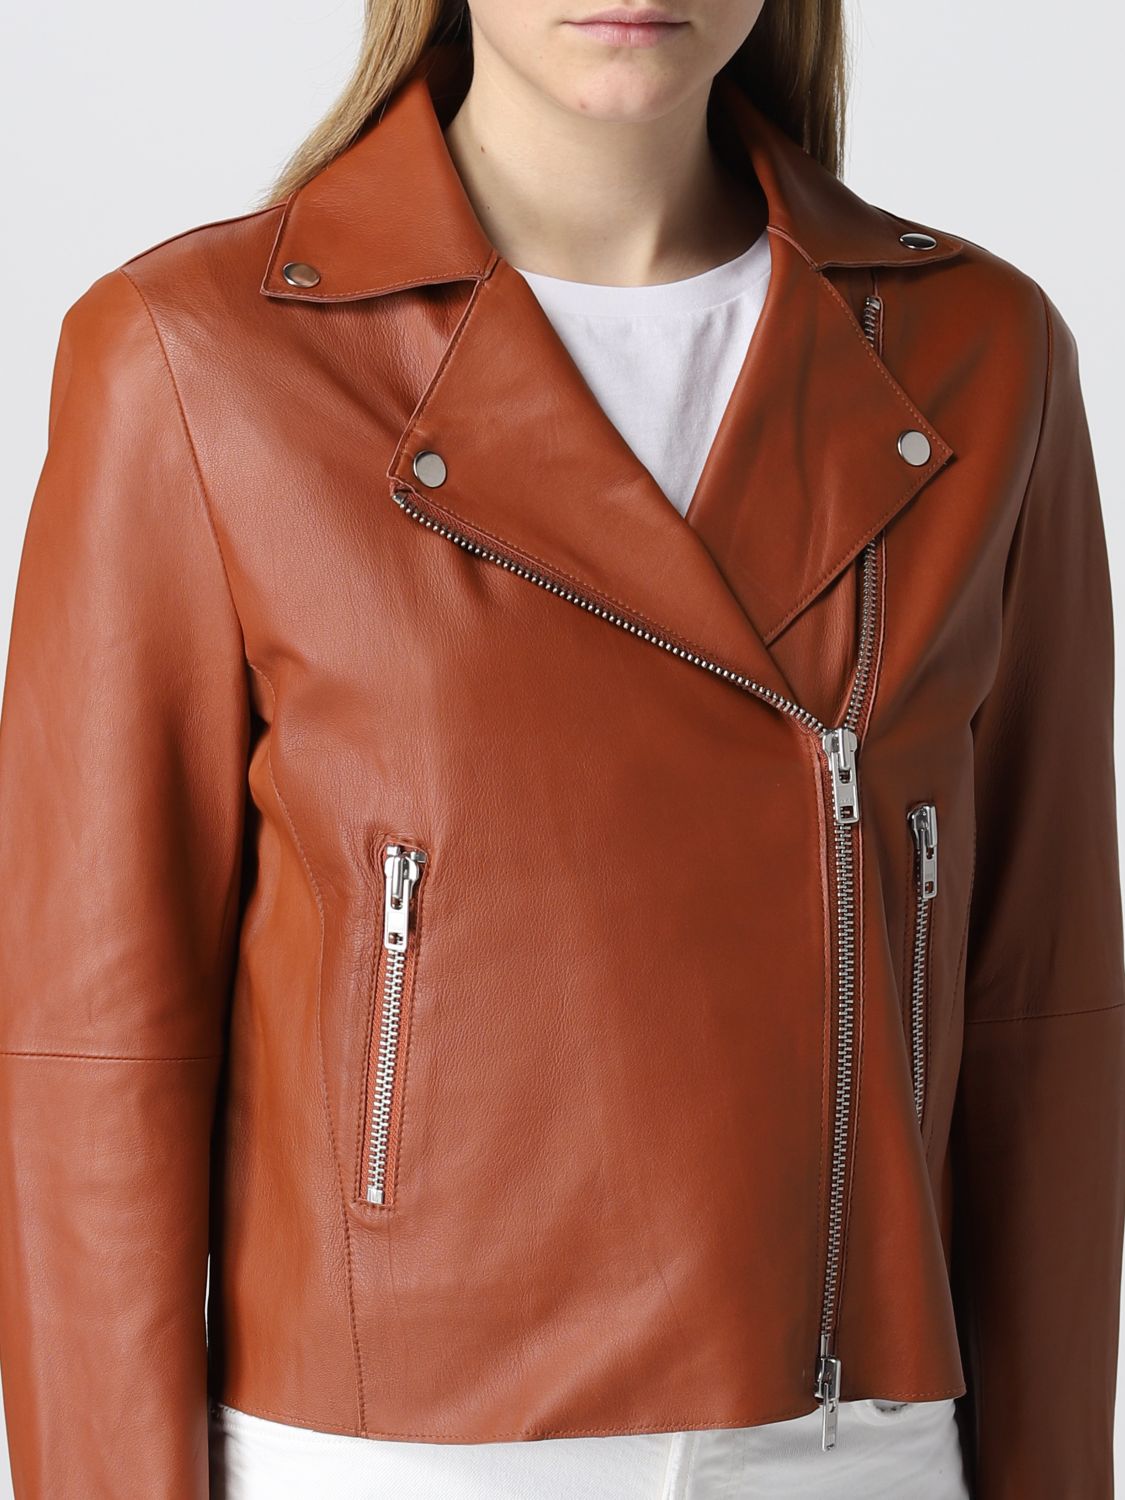 Jacket S.w.o.r.d.: S.w.o.r.d. jacket for woman brown 4